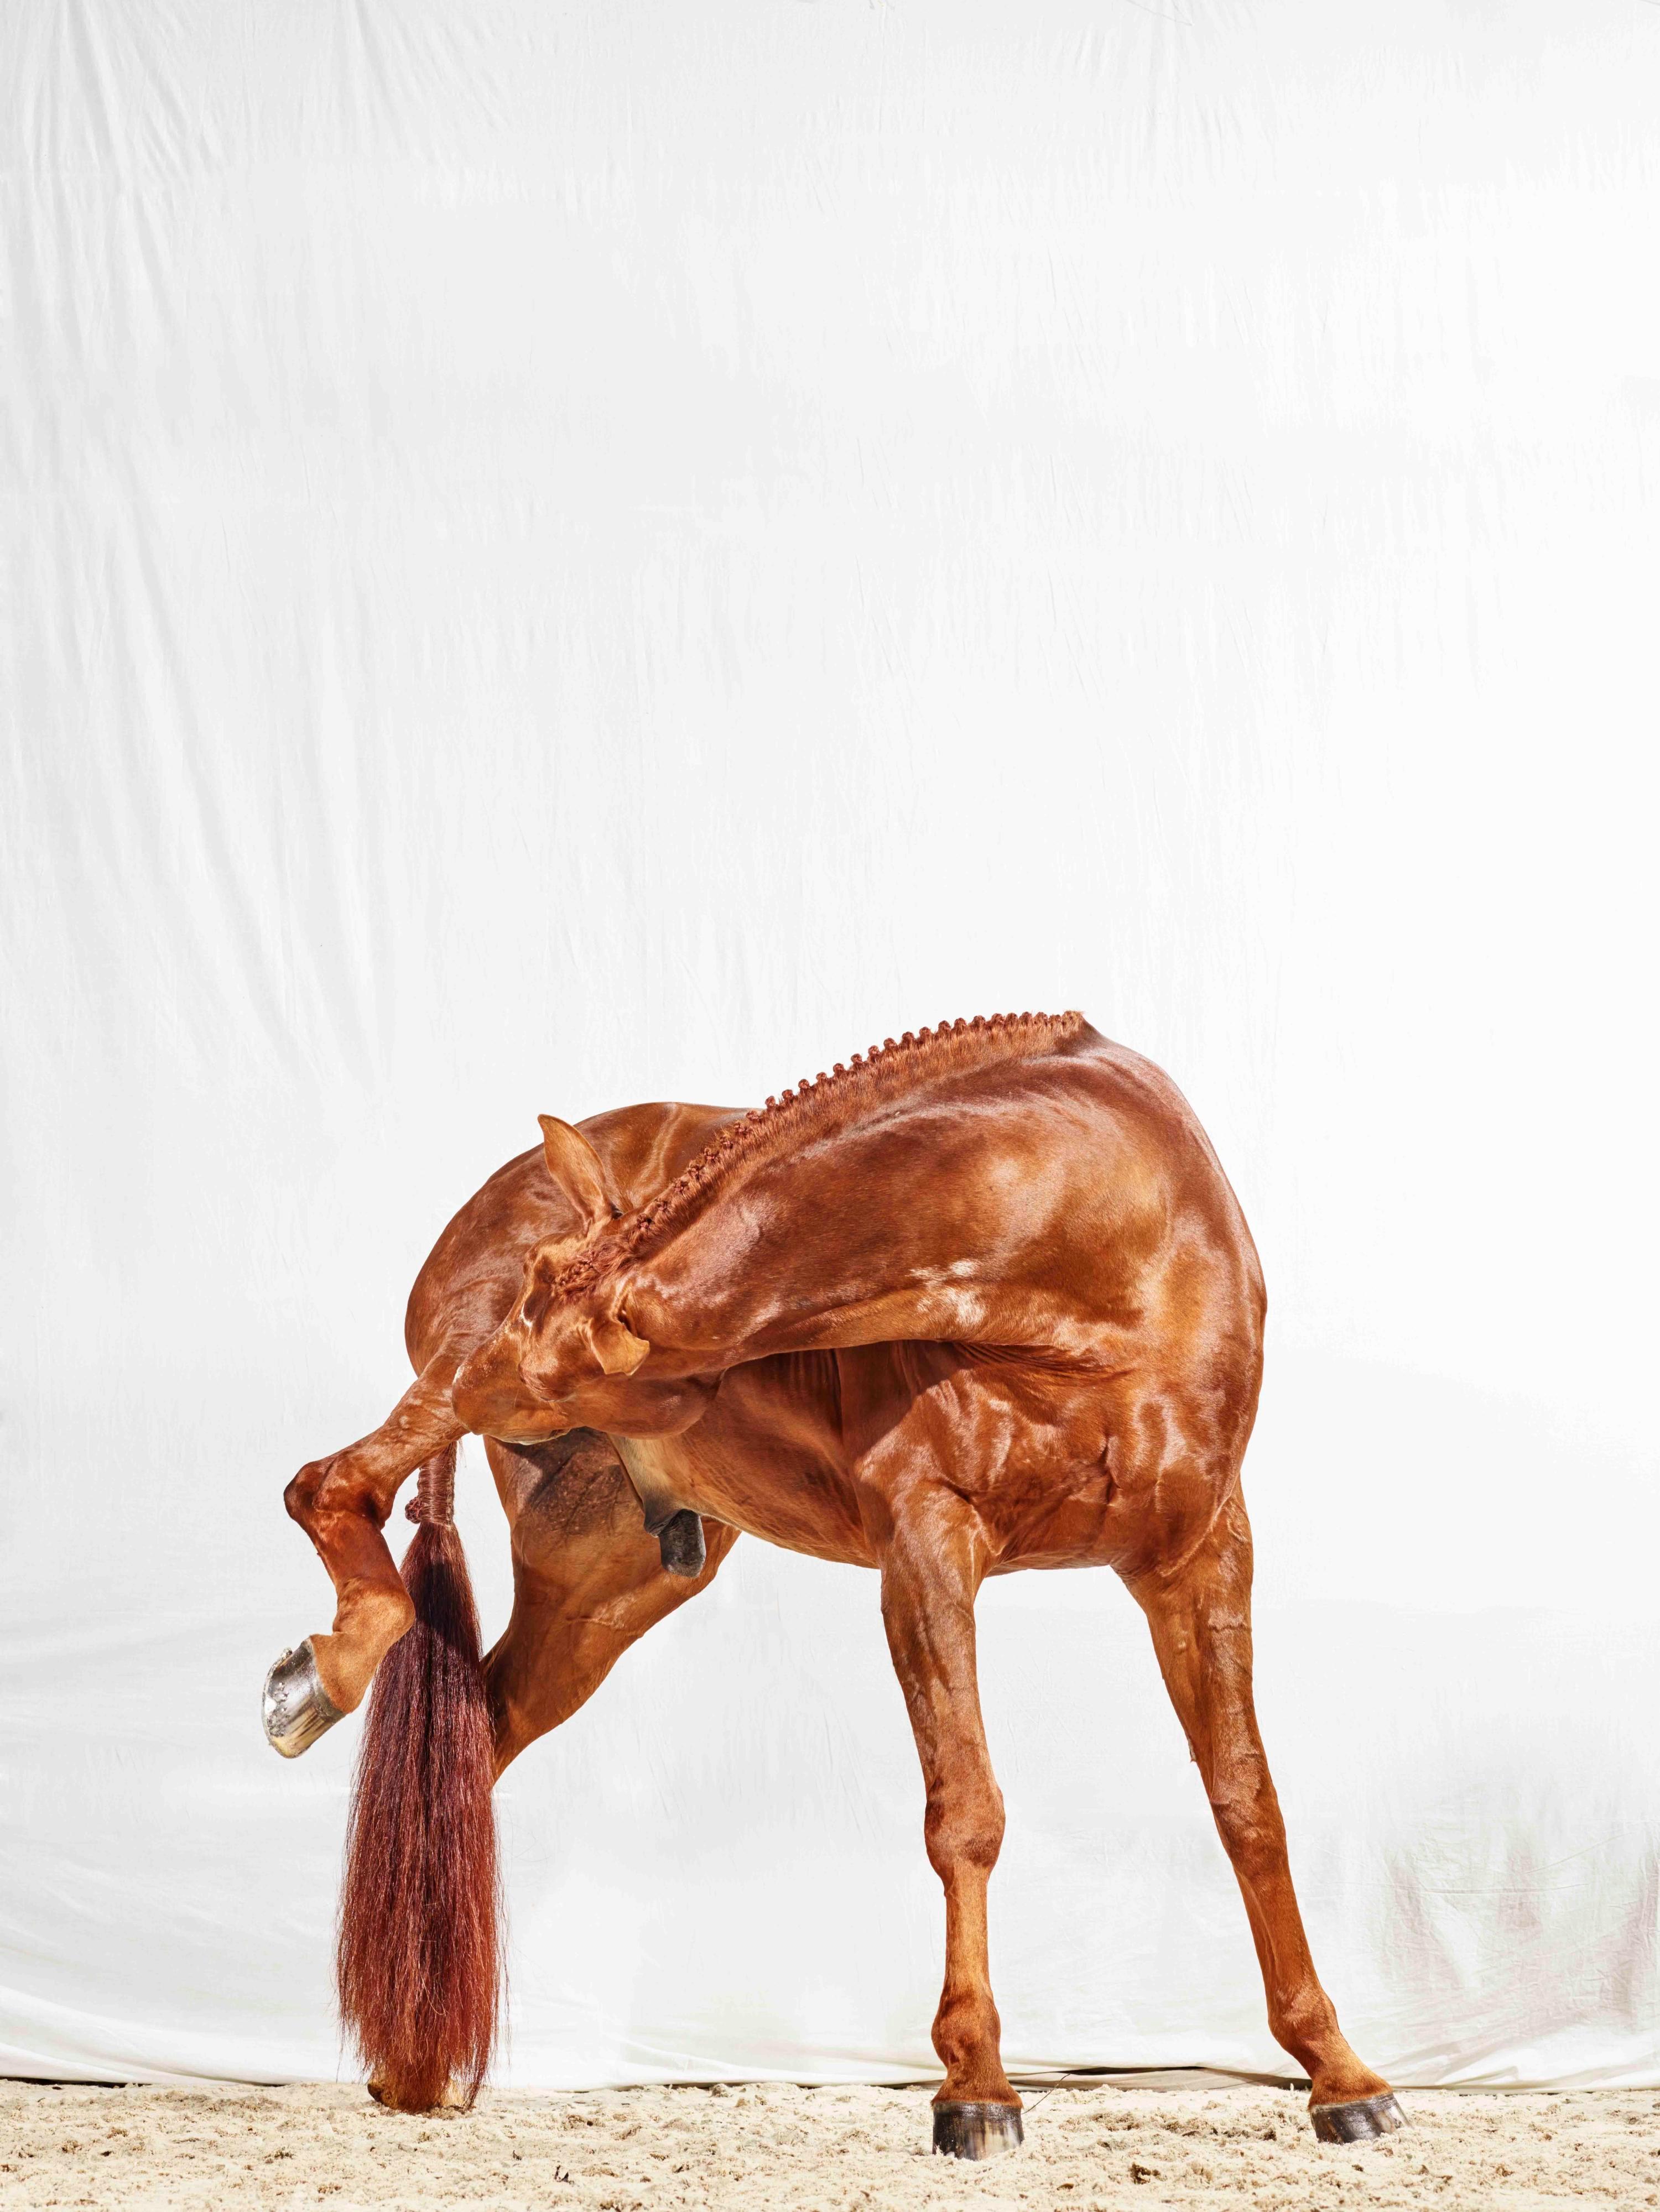 Raymond has an Itch – Vollfarbiges Pferdeporträt in limitierter Auflage 2016 – Photograph von Juan Lamarca